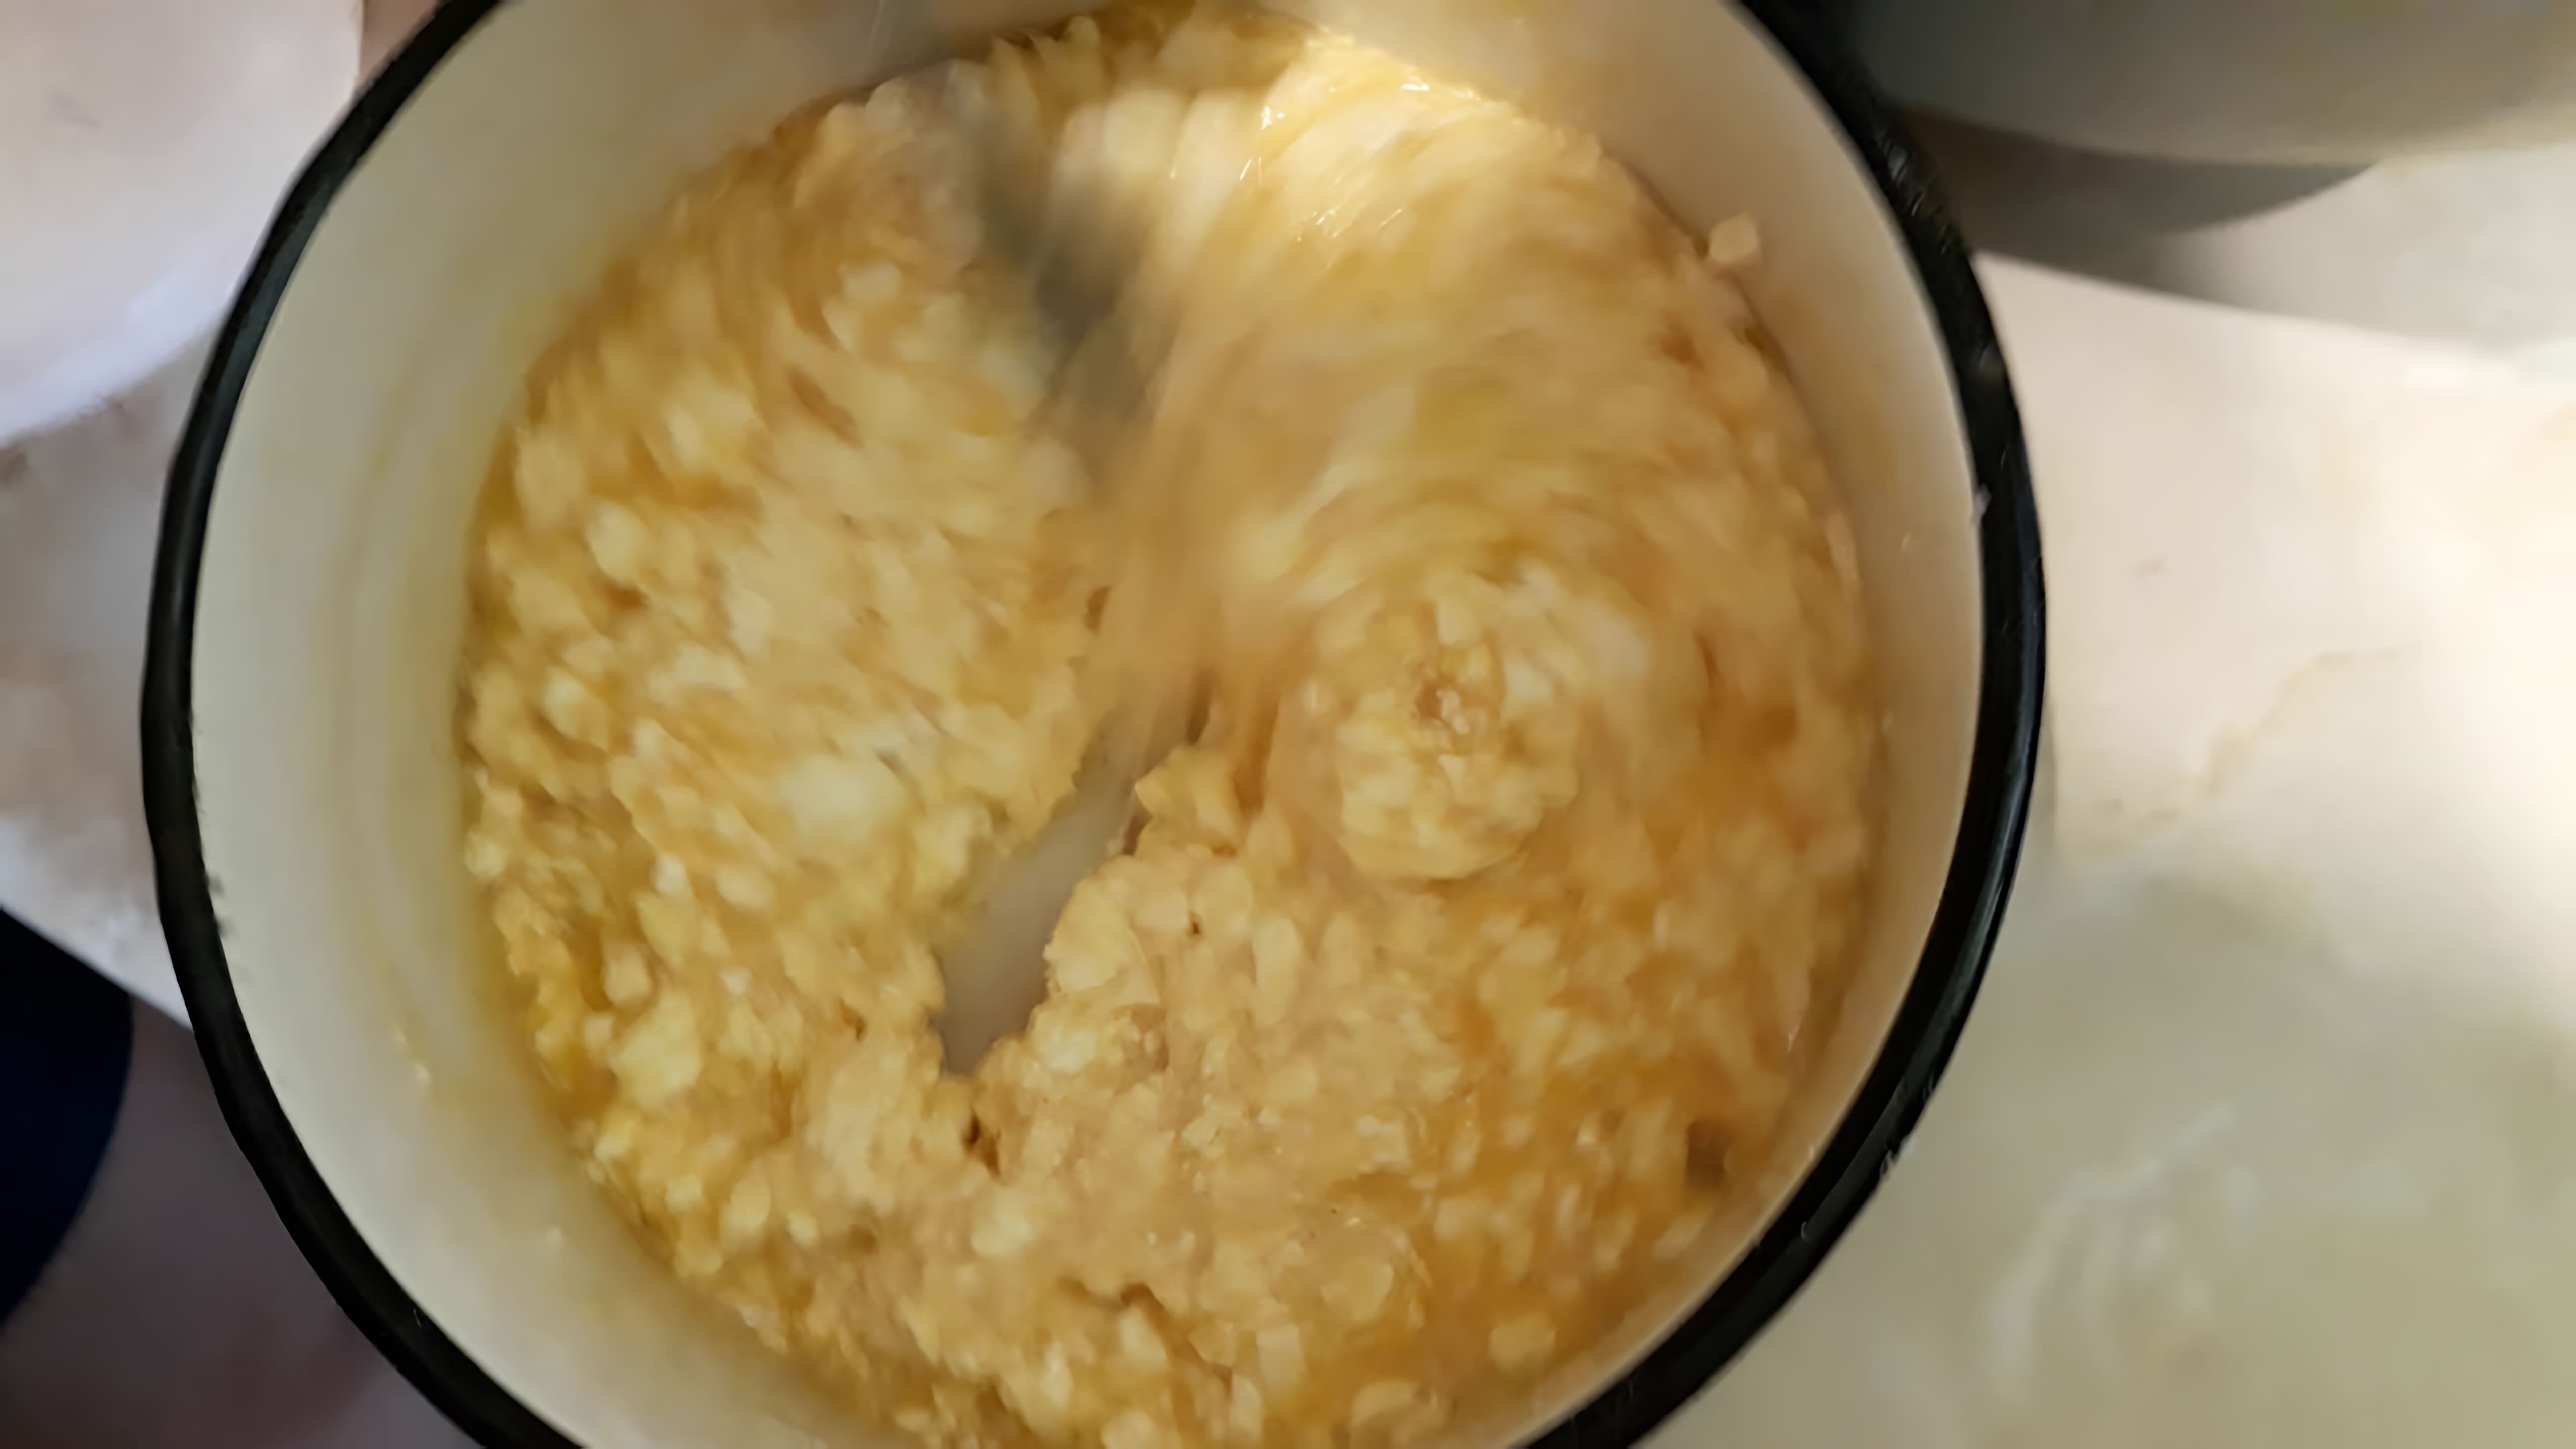 В этом видео демонстрируется процесс приготовления запеканки в хлебопечке